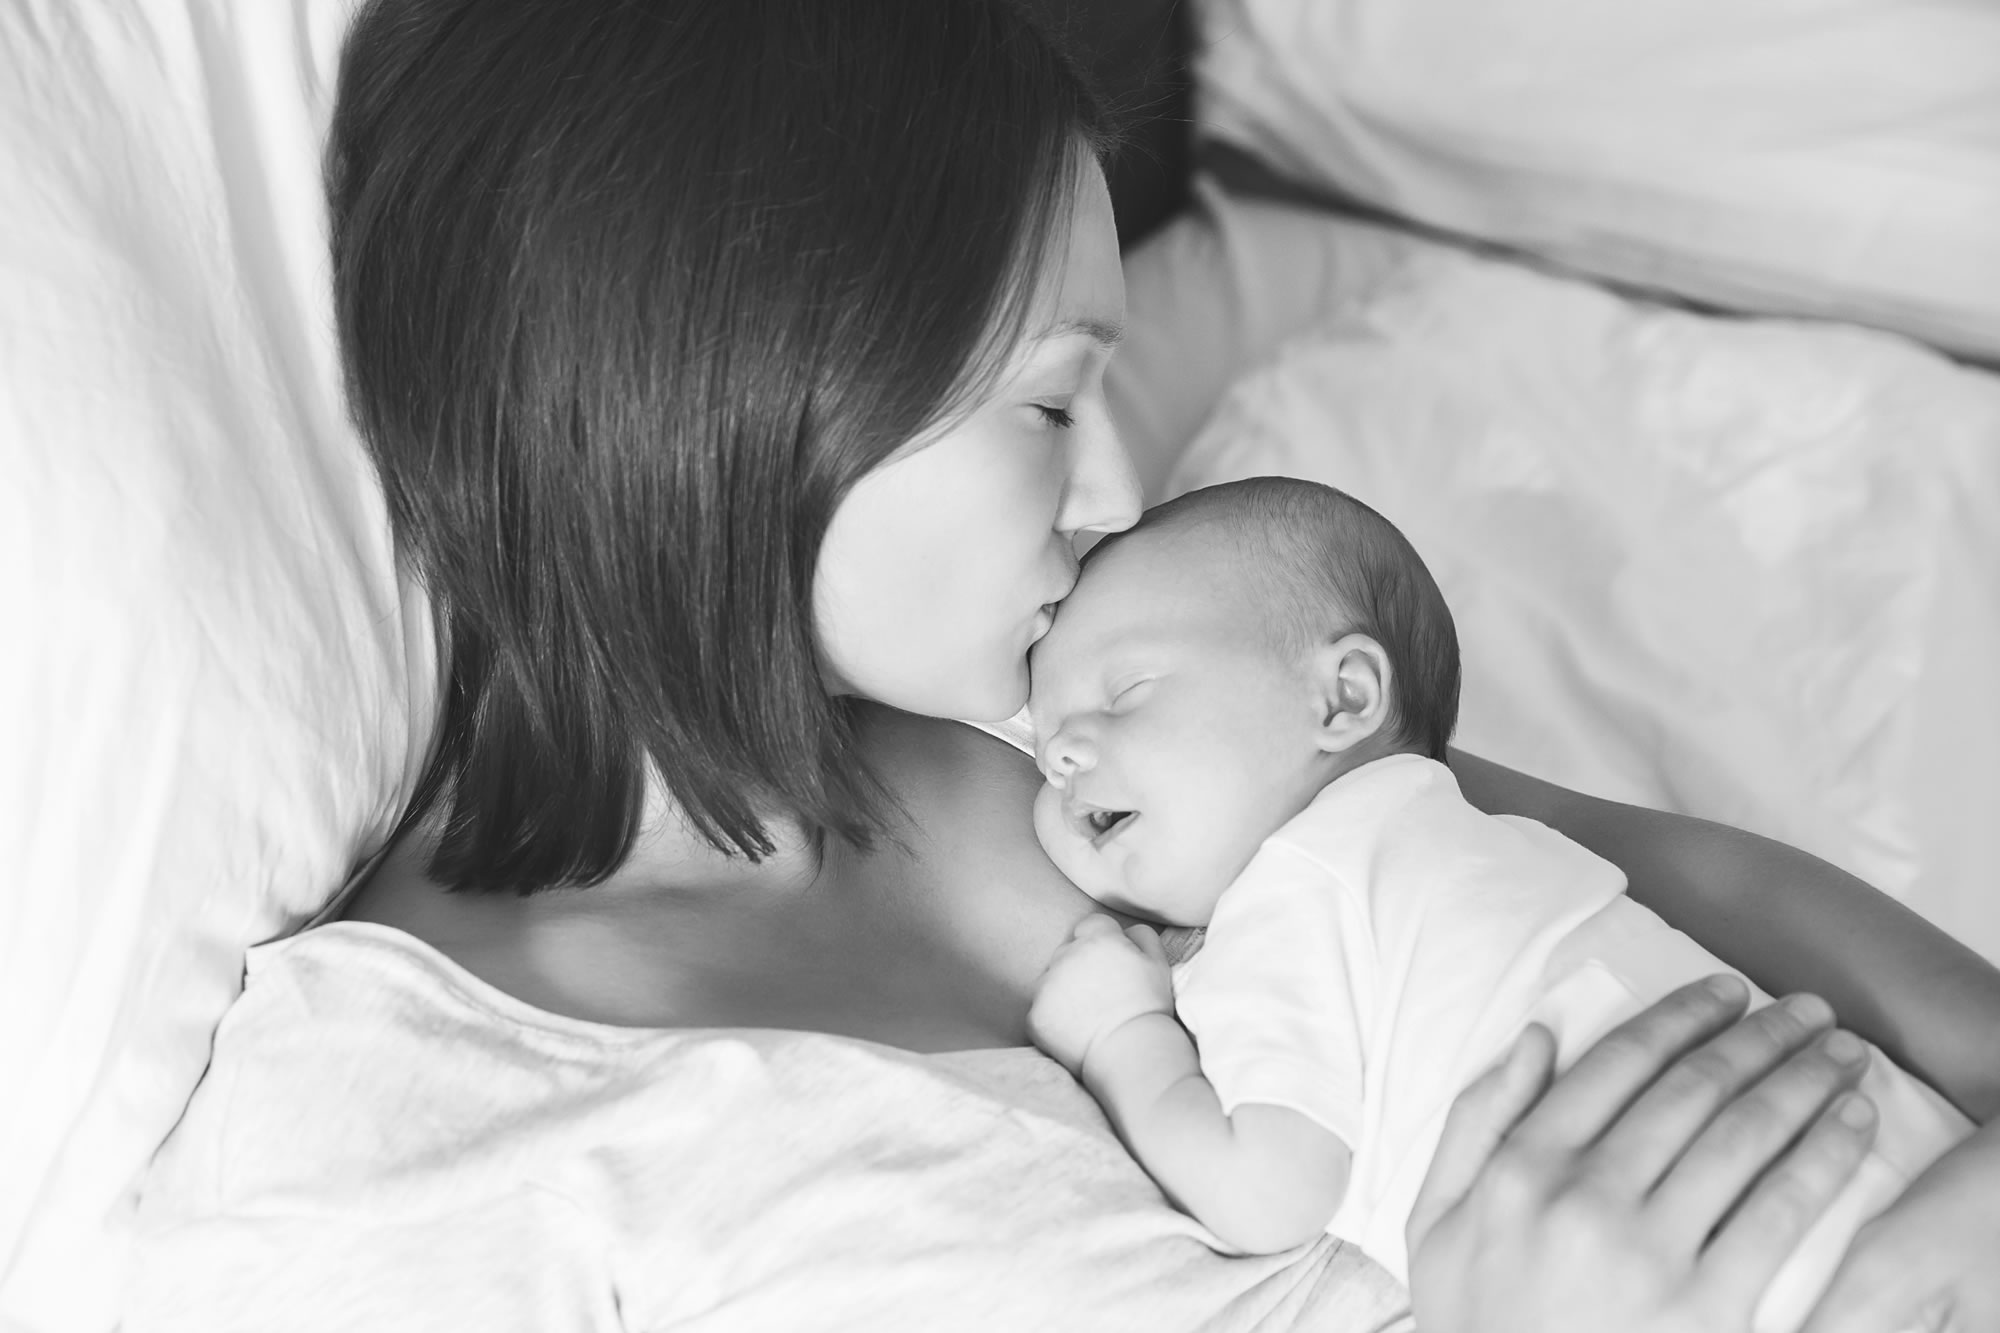 "Woman kissing newborn | OBHG"